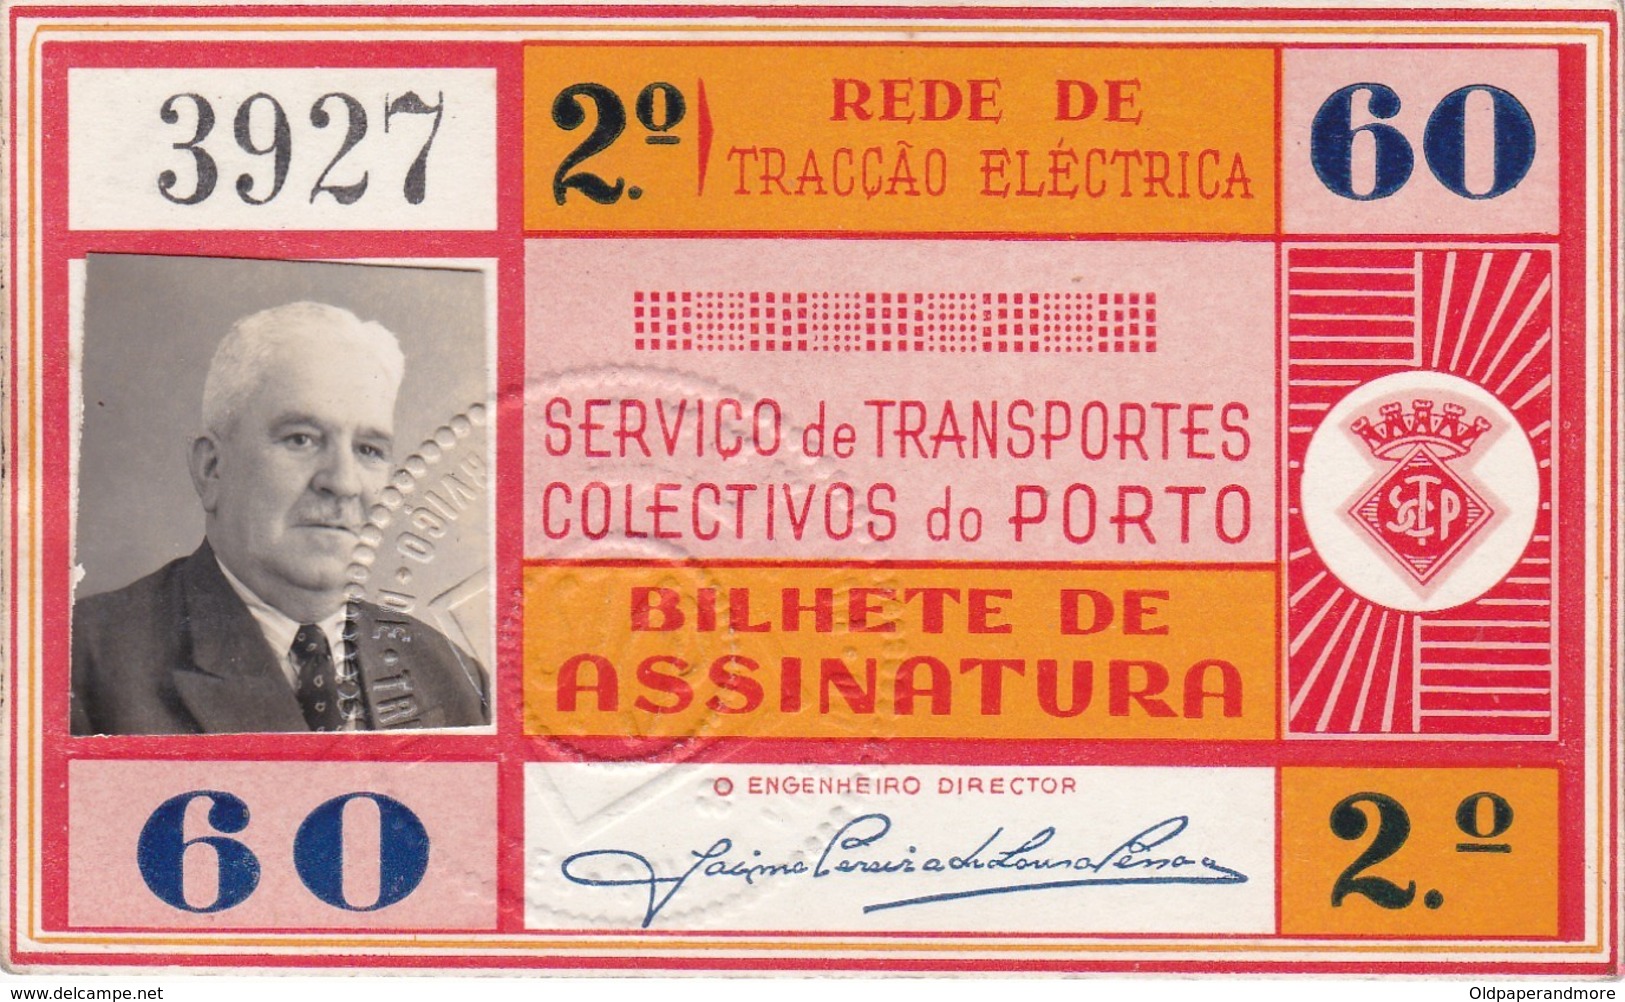 1960 Passe STCP Serviço De Transportes Colectivos Do PORTO Rede Tracção Electrica. Pass Ticket TRAM Portugal 1960 - Europe